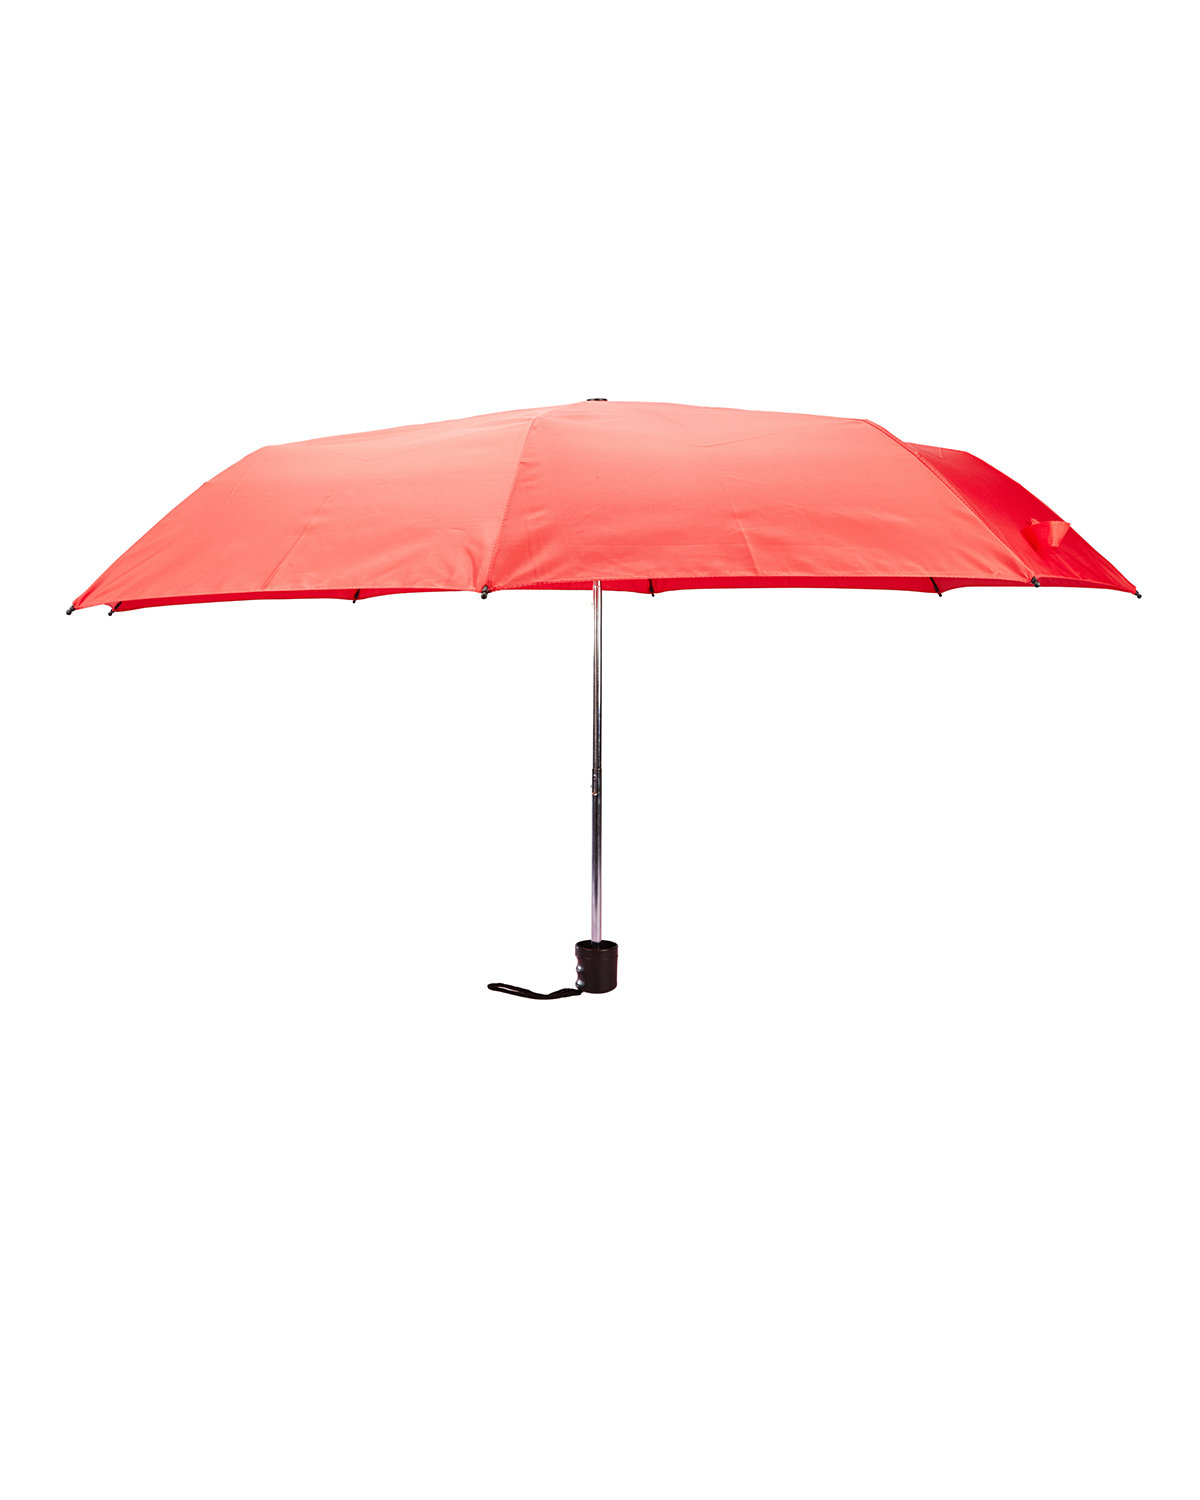 Prime Line Budget Folding Umbrella red 